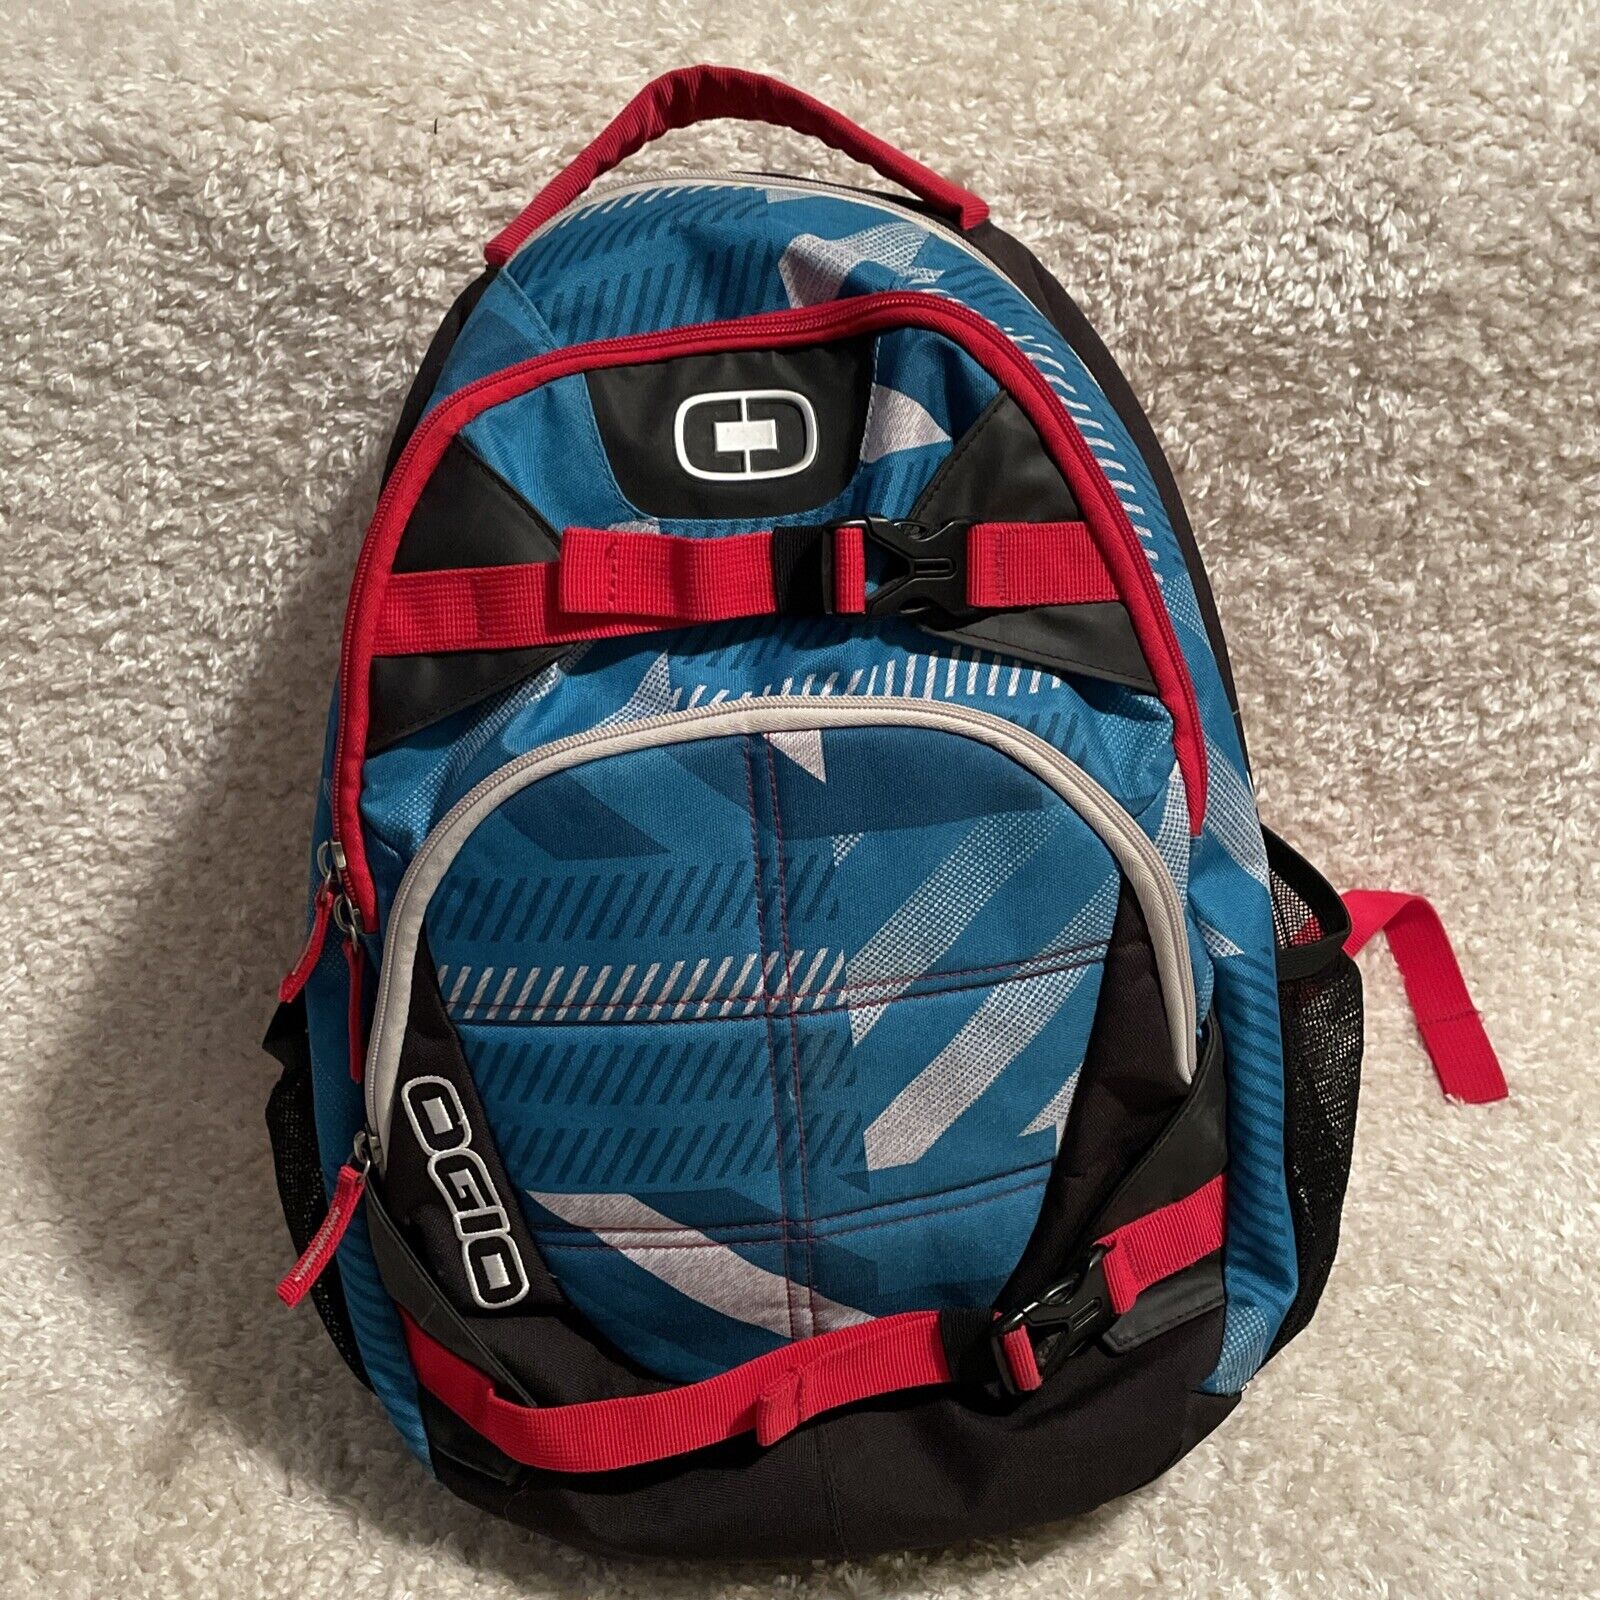 Ogio Rebel 15 Backpack Laptop Tablet Organizer Sleeve Adjustable Black Red Blue